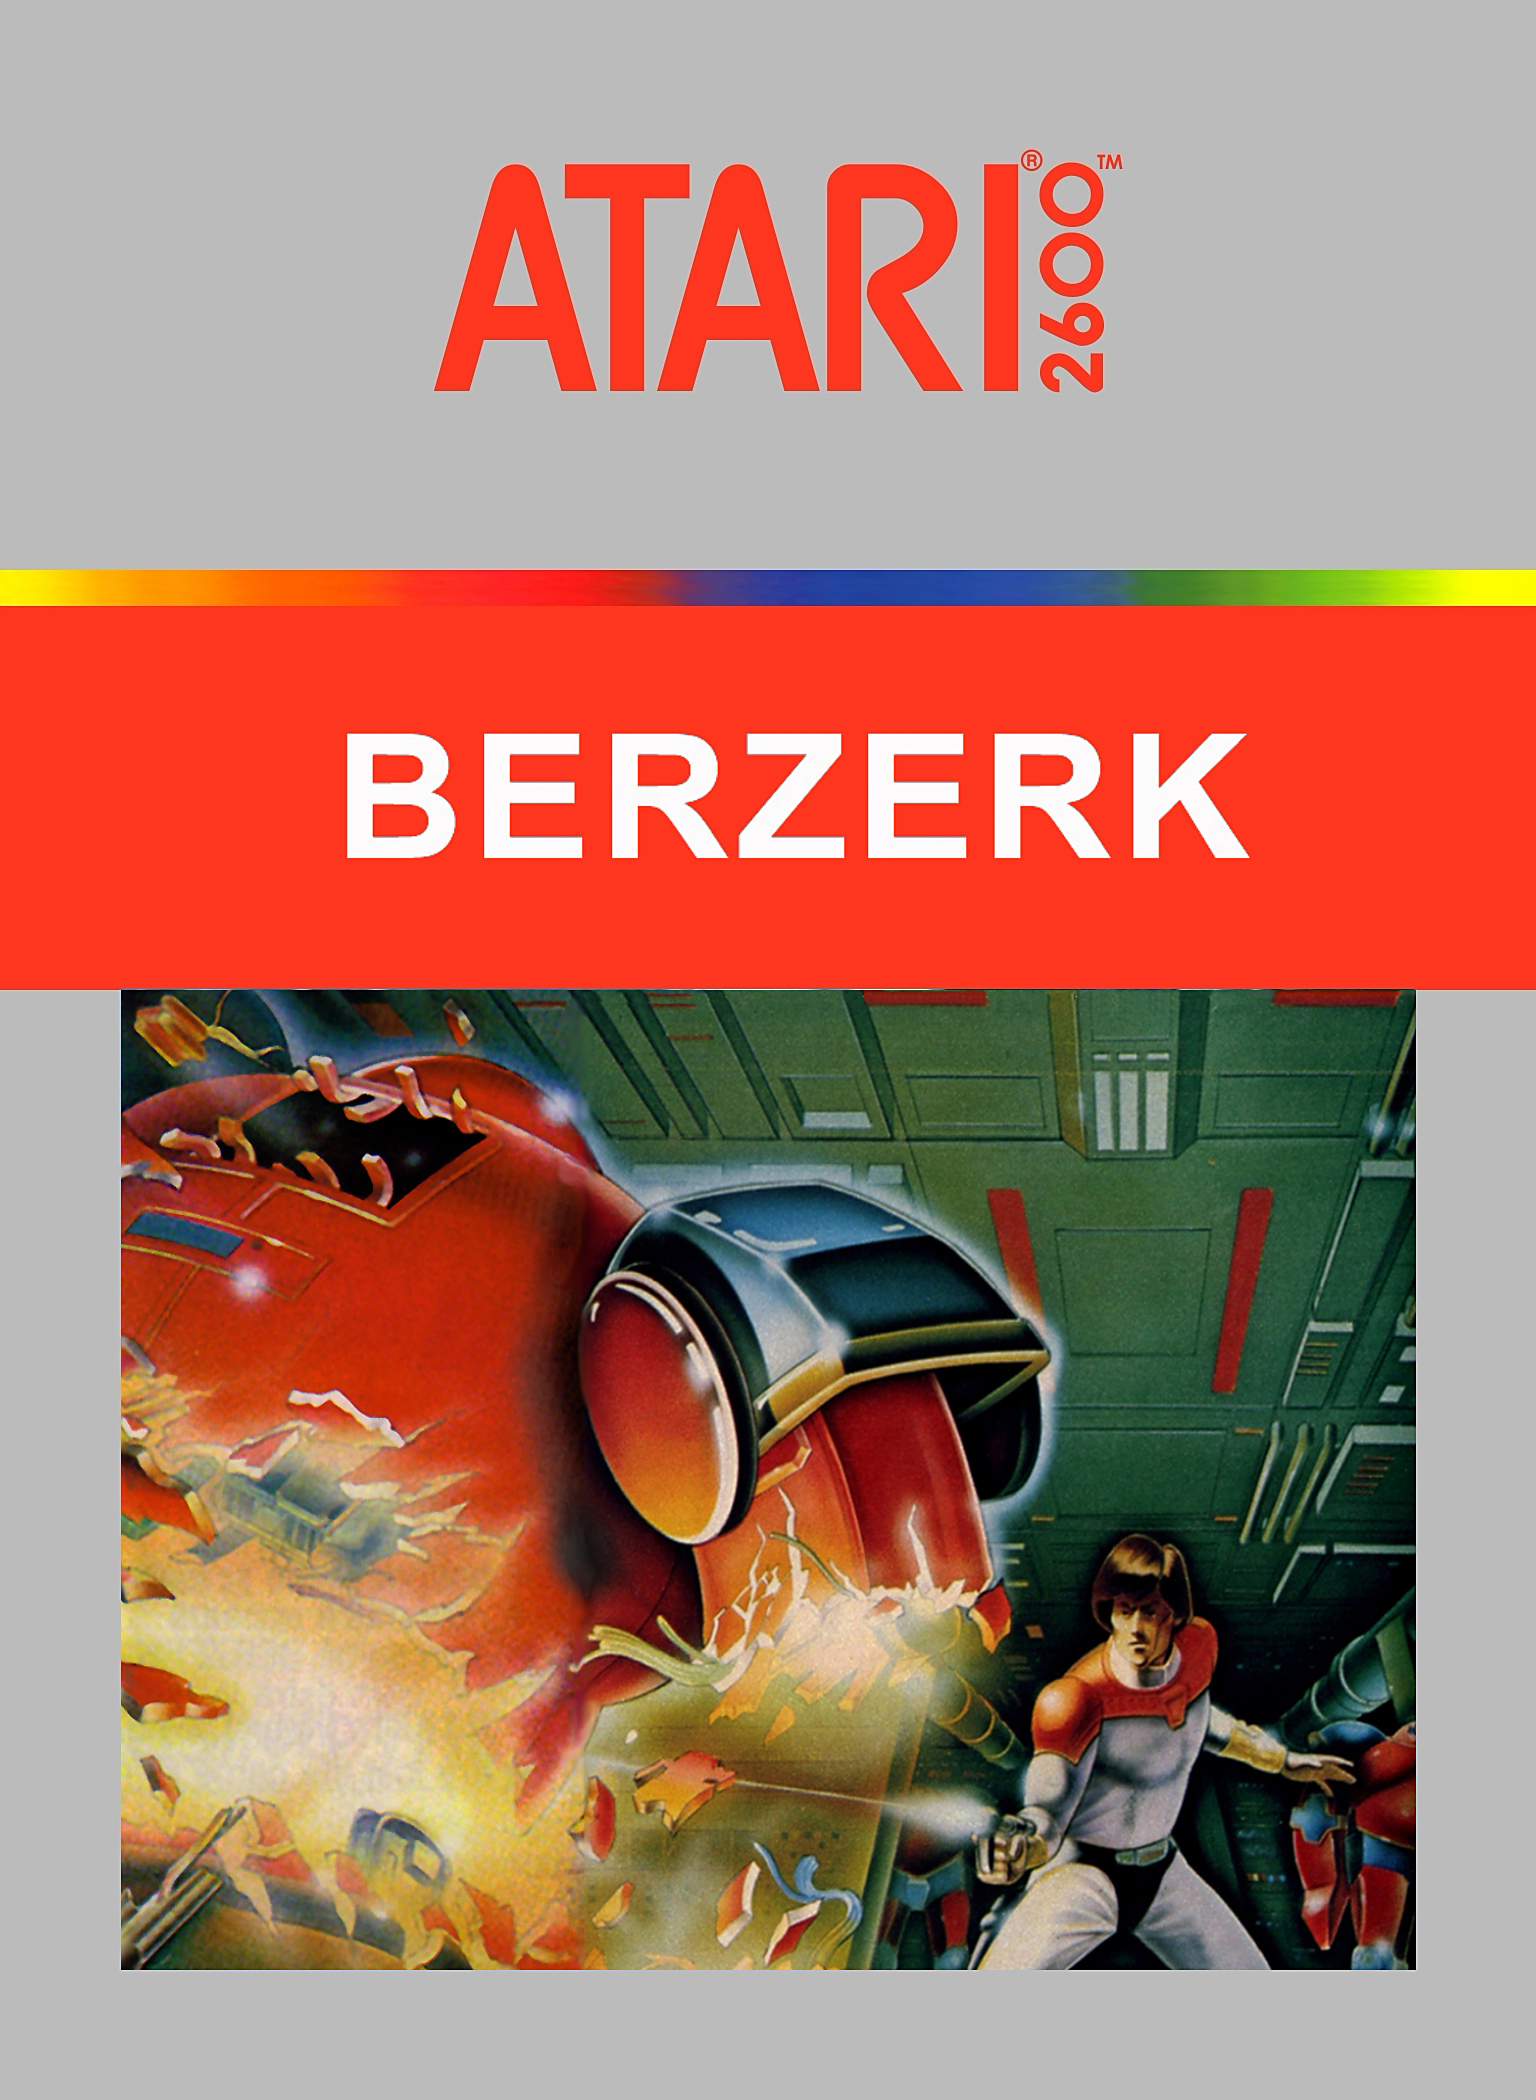 Berzerk - Atari 2600